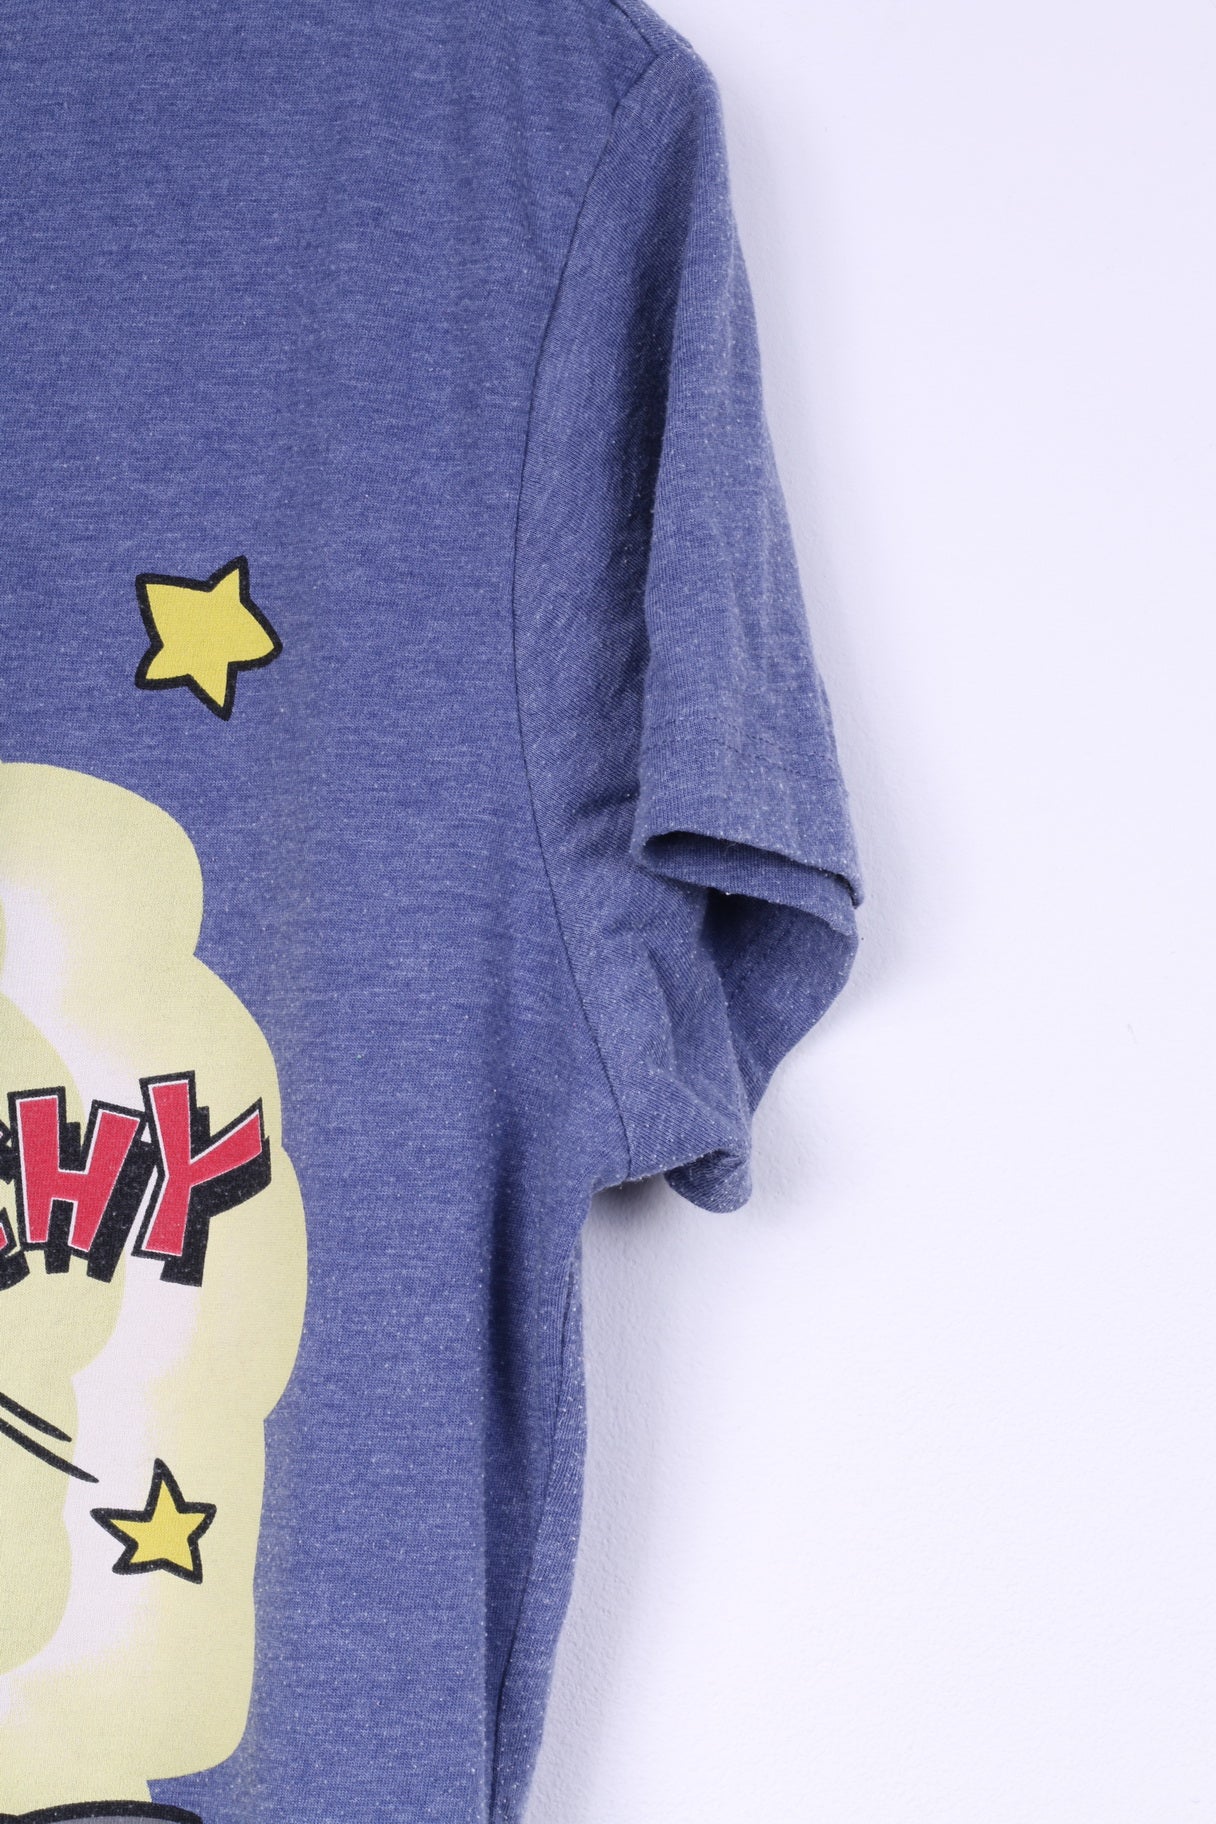 C&amp;A Les Simpsons T-Shirt Homme Bleu Coton Mélange Graphique The Itchy &amp; Scratchy Show 